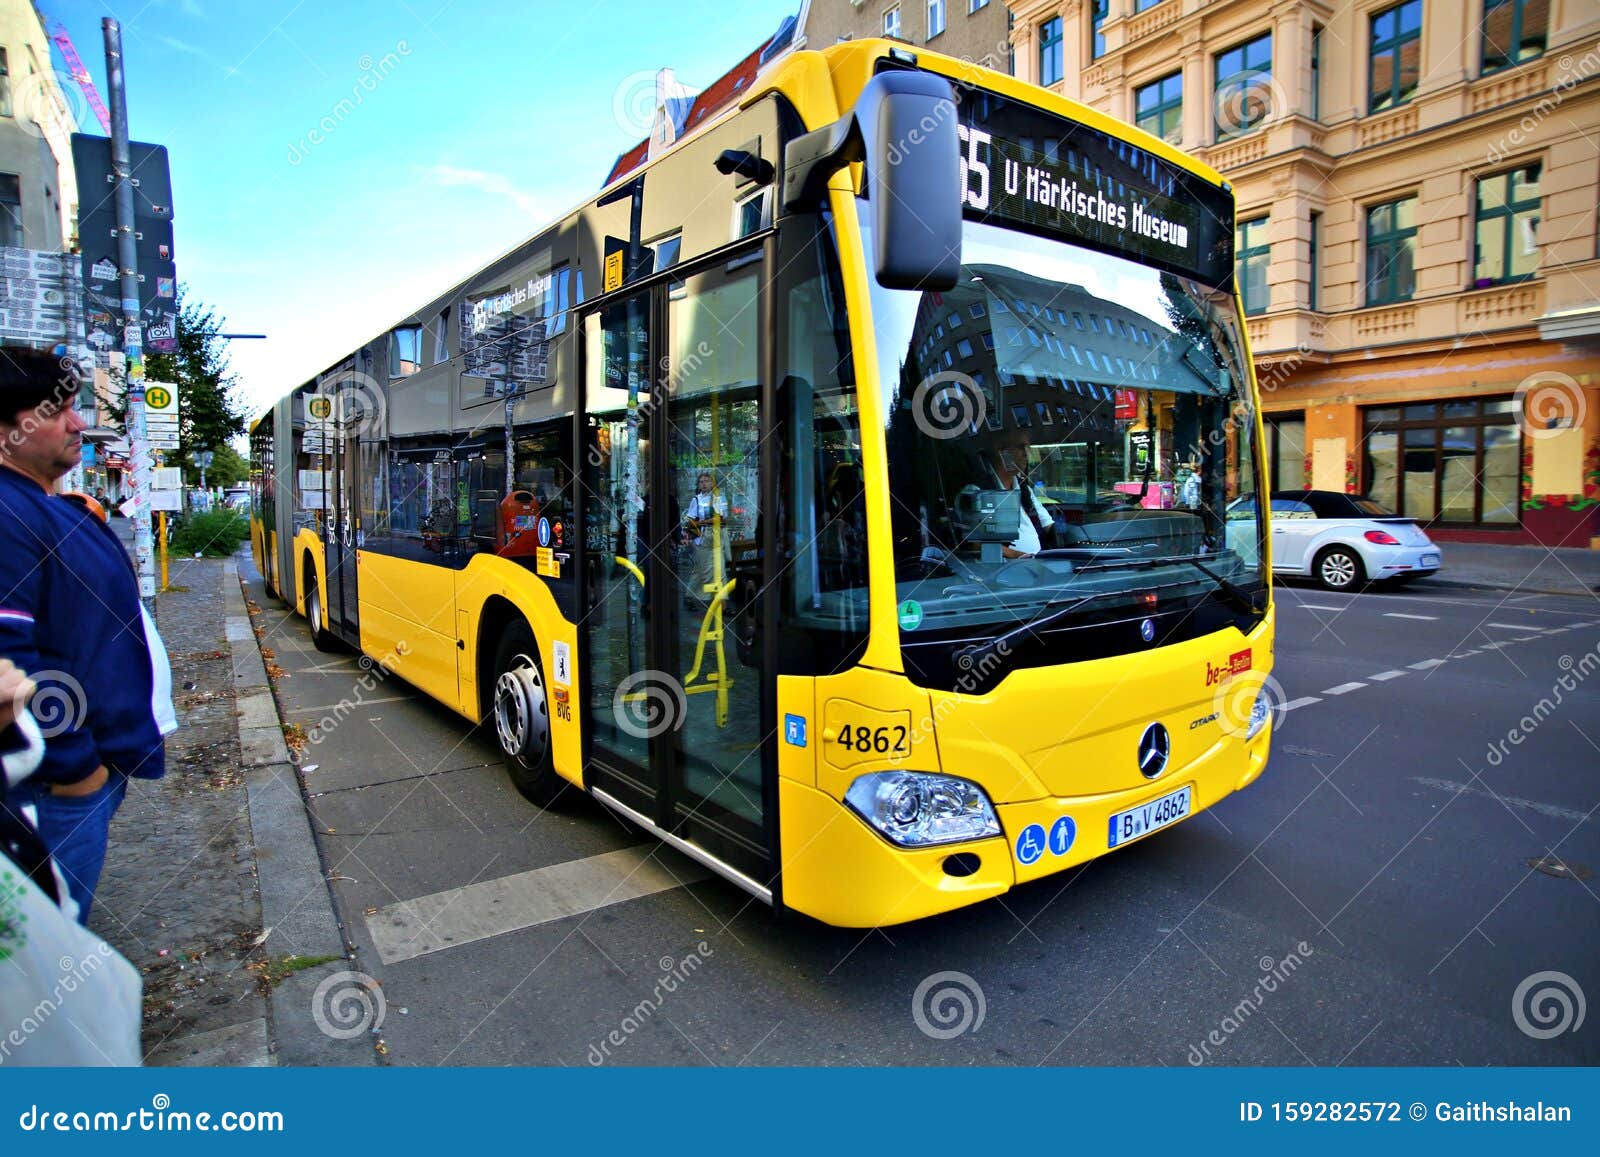 hoekpunt hout betaling De Bus Voor Het Openbaar Vervoer in Berlijn Duitsland Redactionele  Fotografie - Image of straat, passagier: 159282572